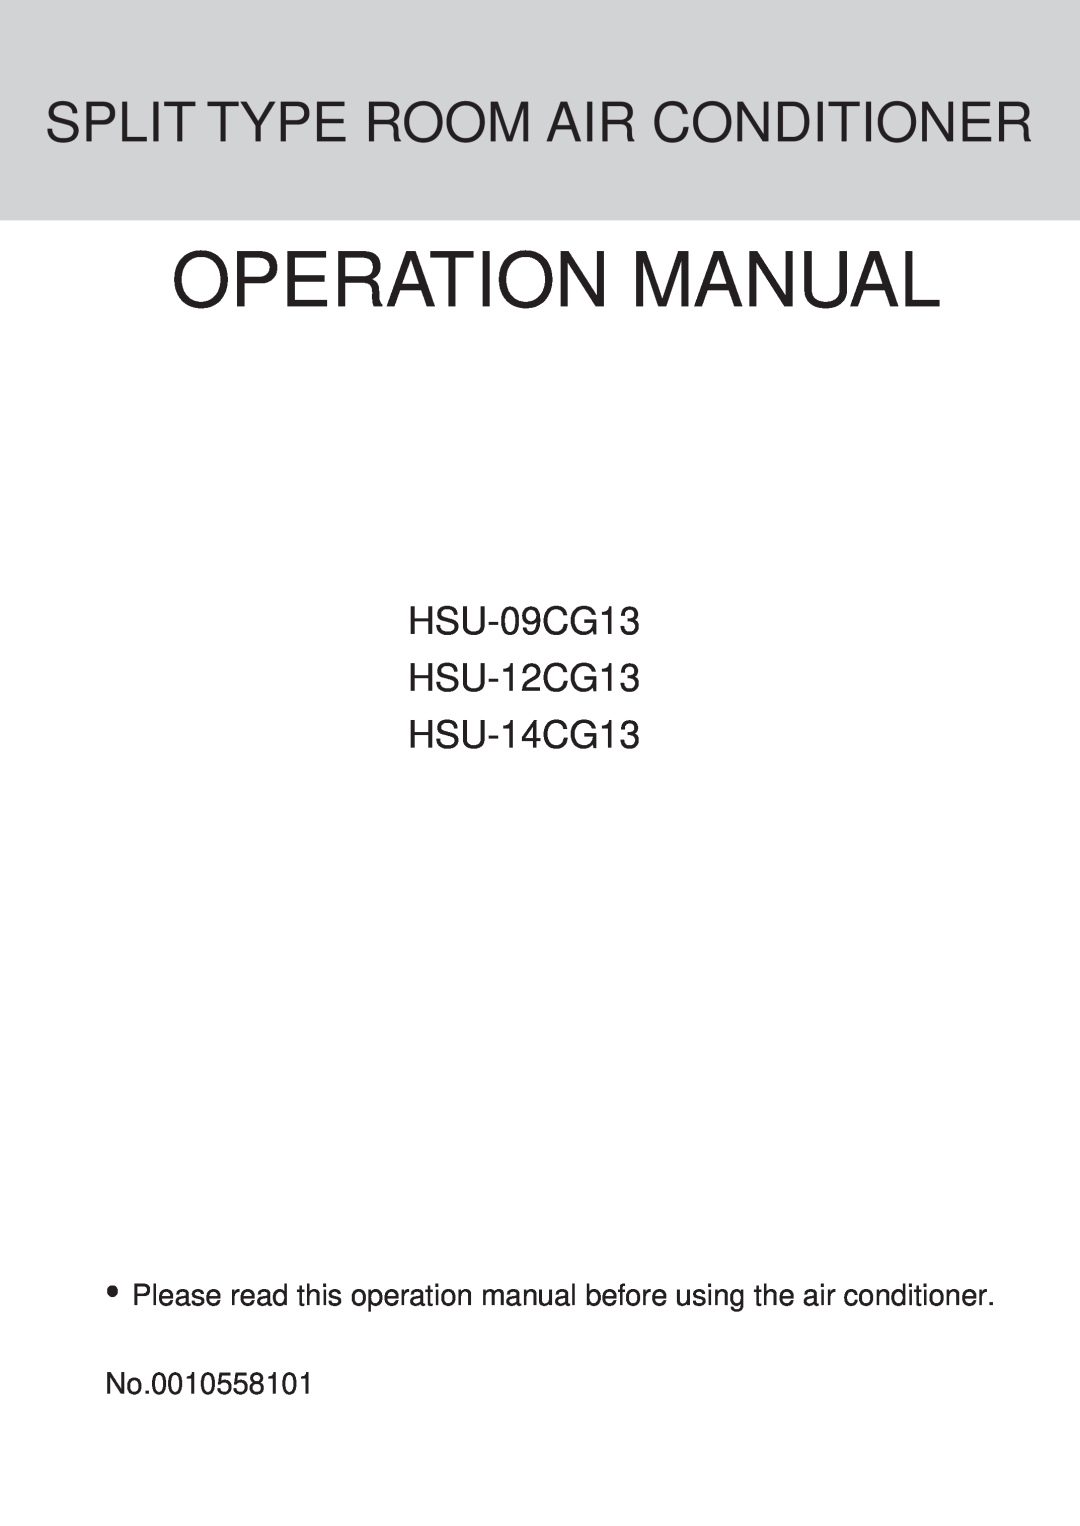 Haier operation manual Split Type Room Air Conditioner, HSU-09CG13 HSU-12CG13 HSU-14CG13, No.0010558101 